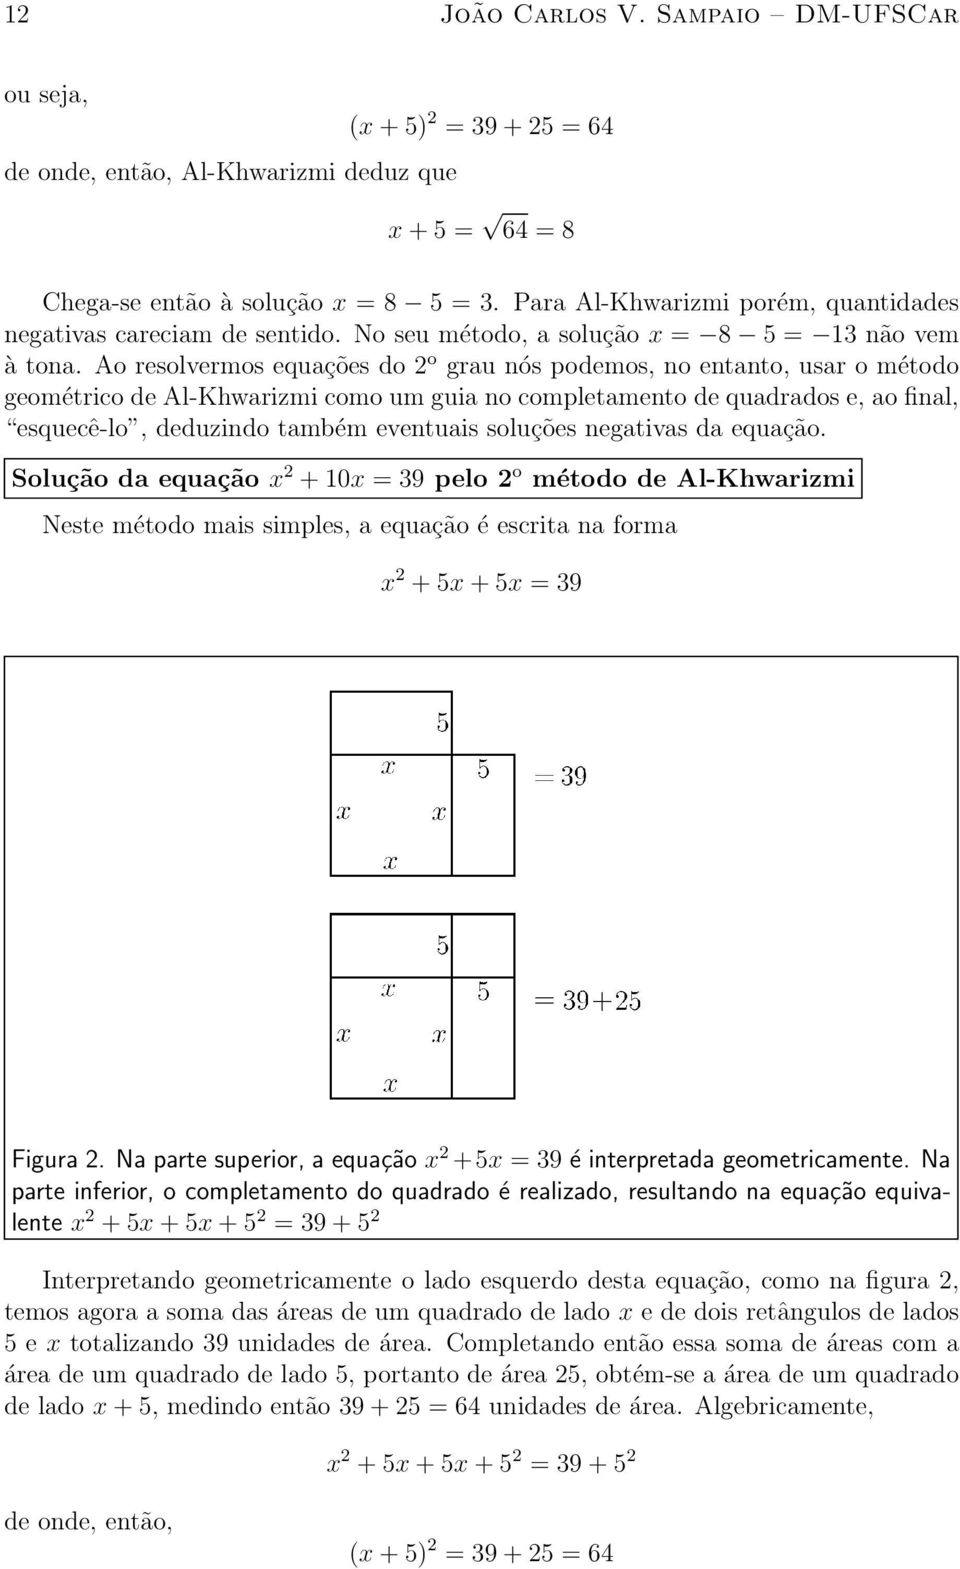 Ao resolvermos equa»c~oes do 2 o grau n os podemos, no entanto, usar o m etodo geom etrico de Al-Khwarizmi como um guia no completamento de quadrados e, ao nal, \esquec^e-lo", deduzindo tamb em